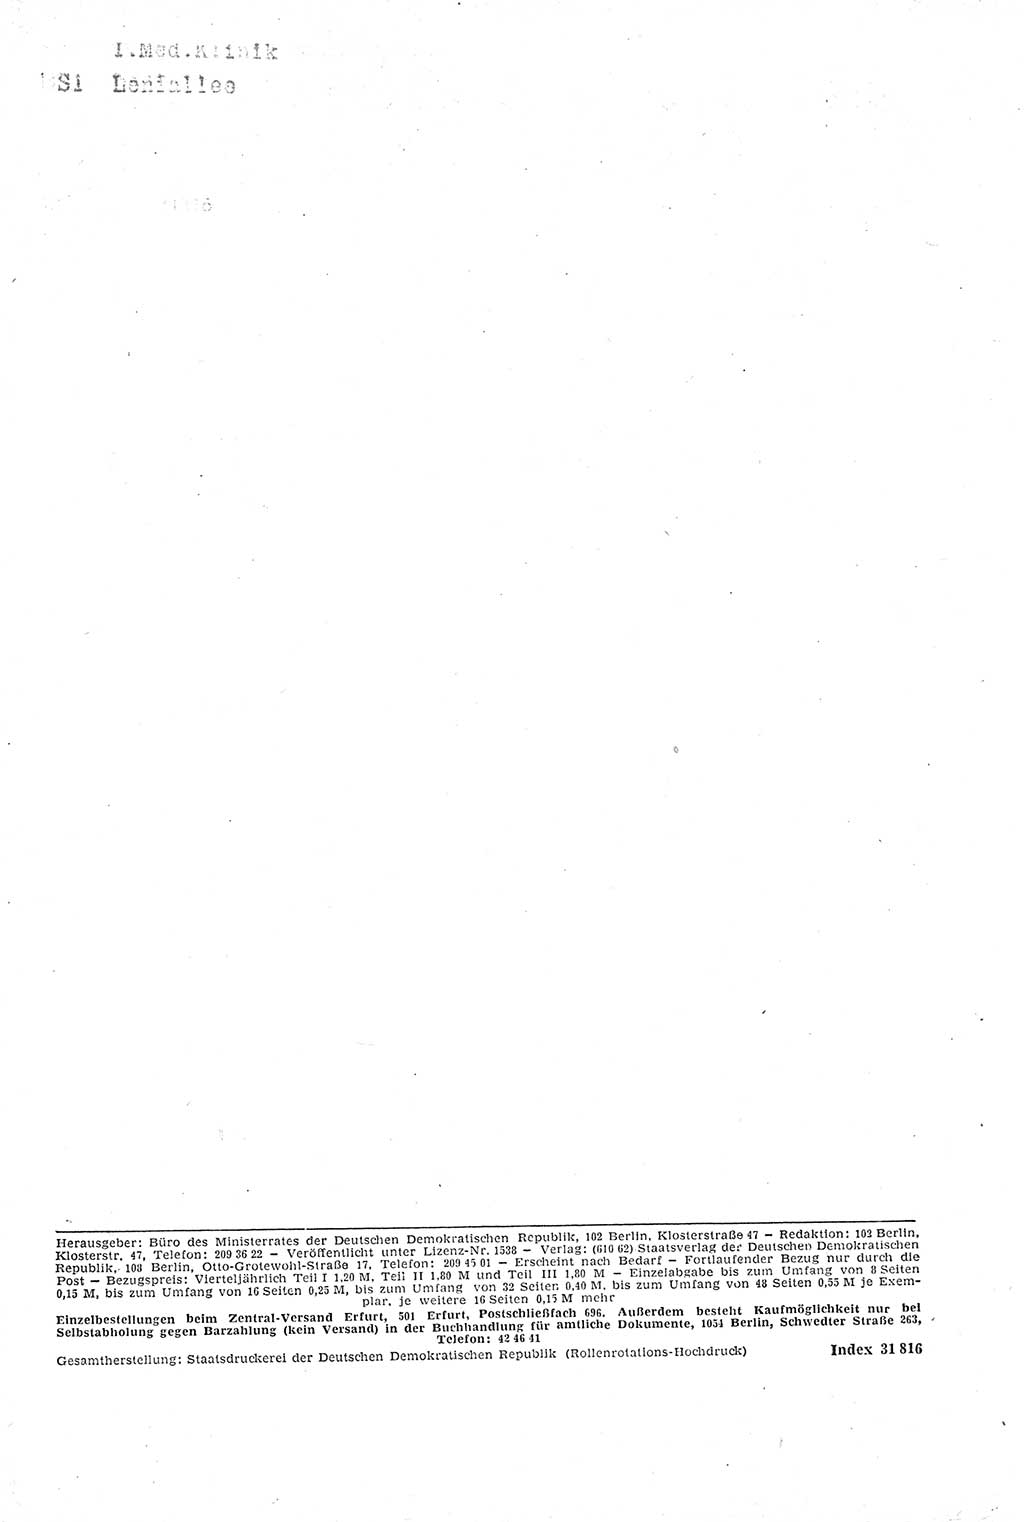 Gesetzblatt (GBl.) der Deutschen Demokratischen Republik (DDR) Teil Ⅰ 1970, Seite 10 (GBl. DDR Ⅰ 1970, S. 10)